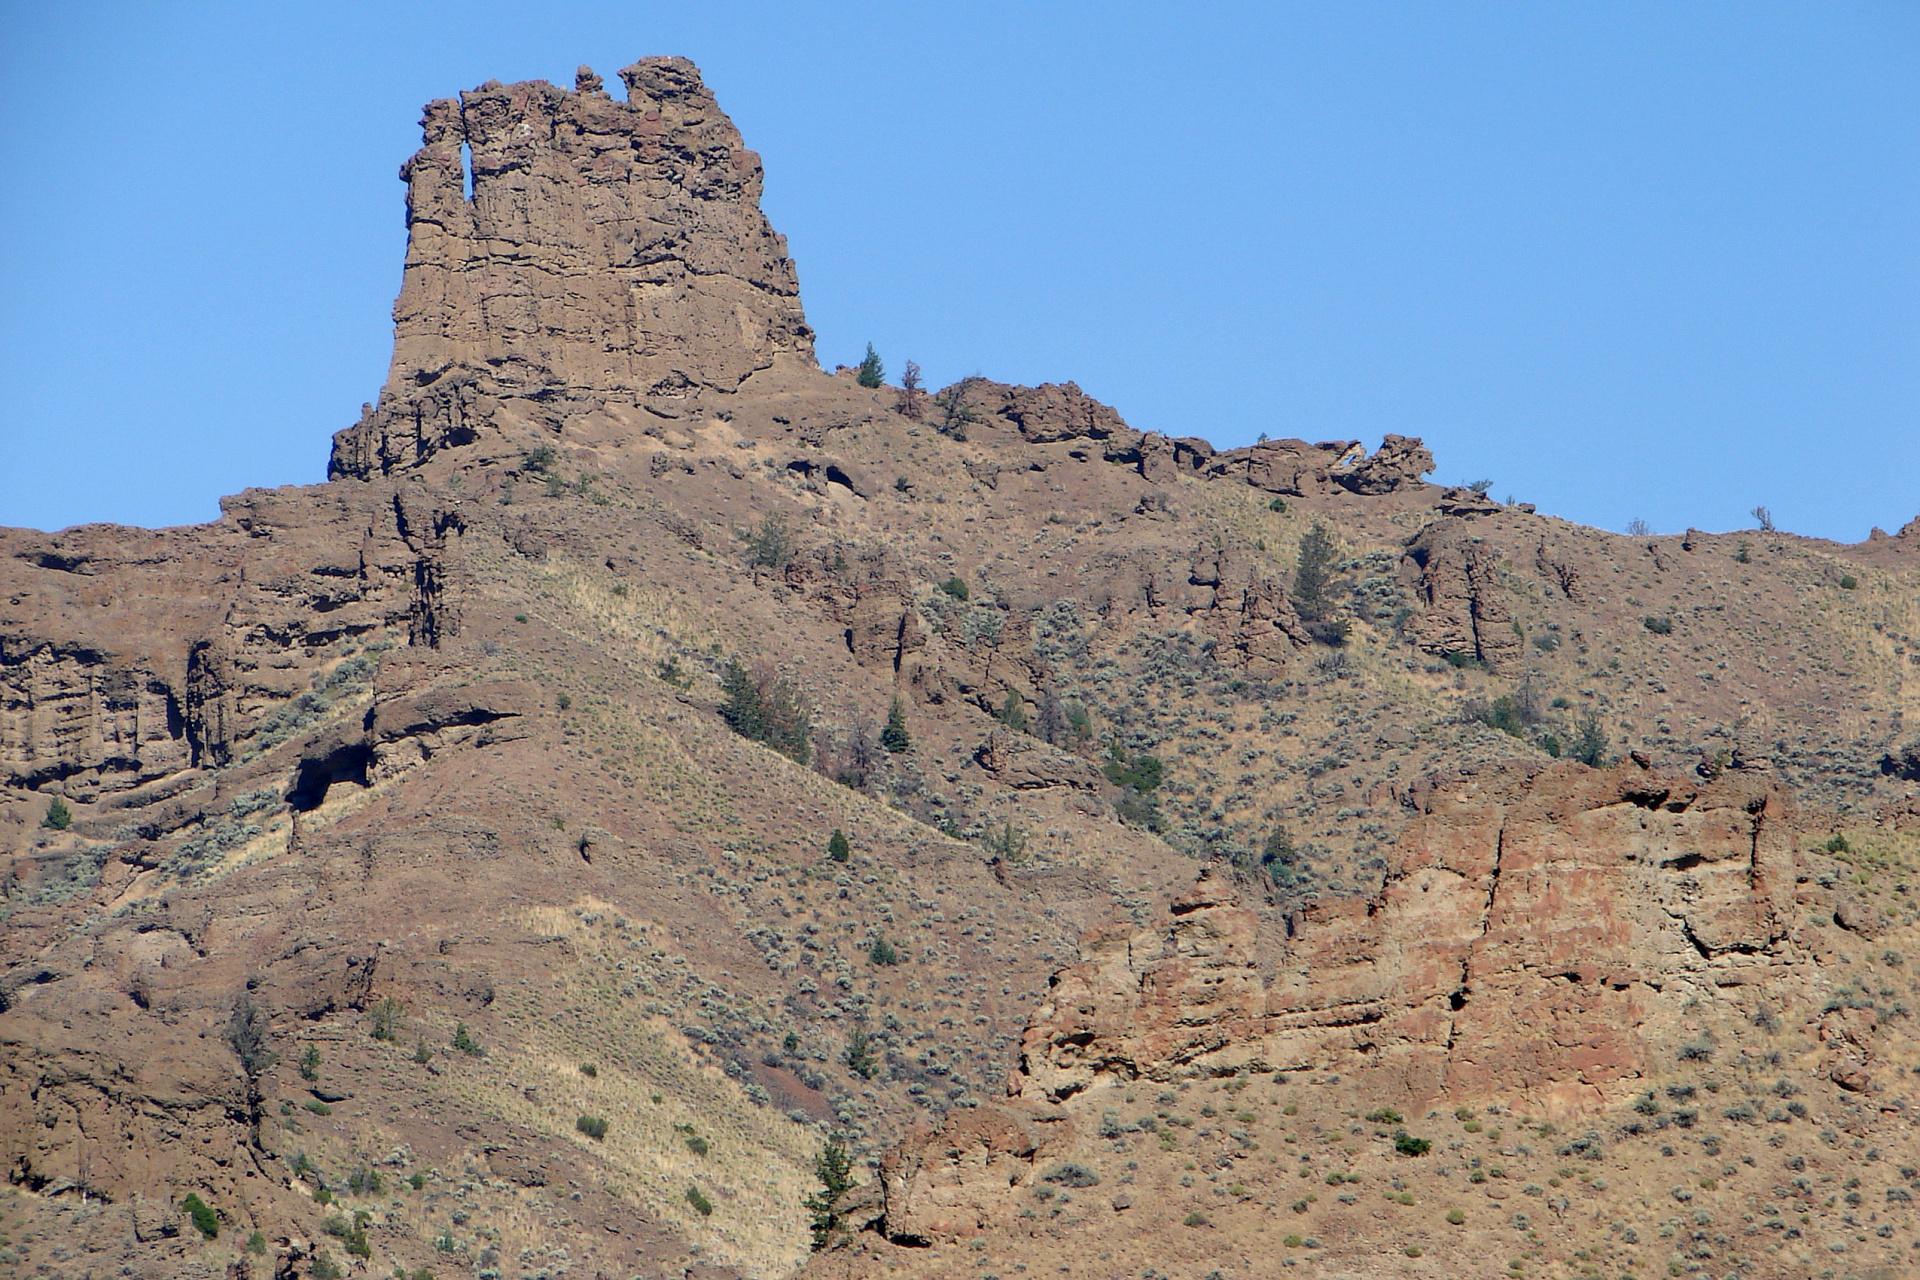 Holy City Rocks (Podróże » USA: Na ziemi Czejenów » Wielka Podróż » Shoshone National Forest)